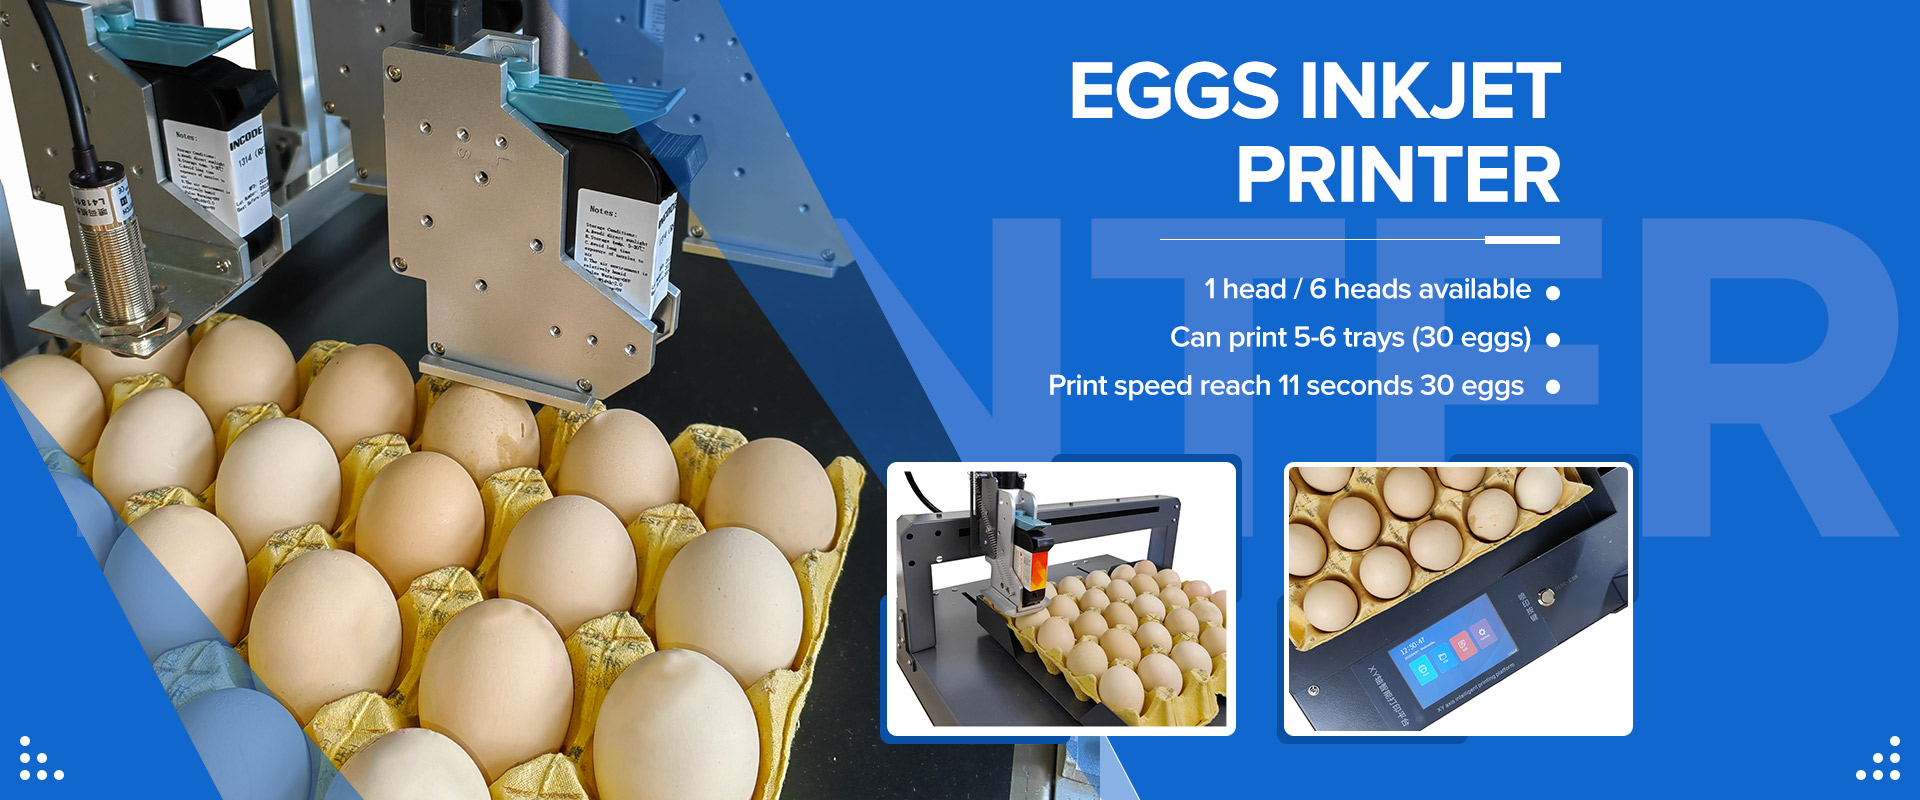 Egg Inkjet Printer